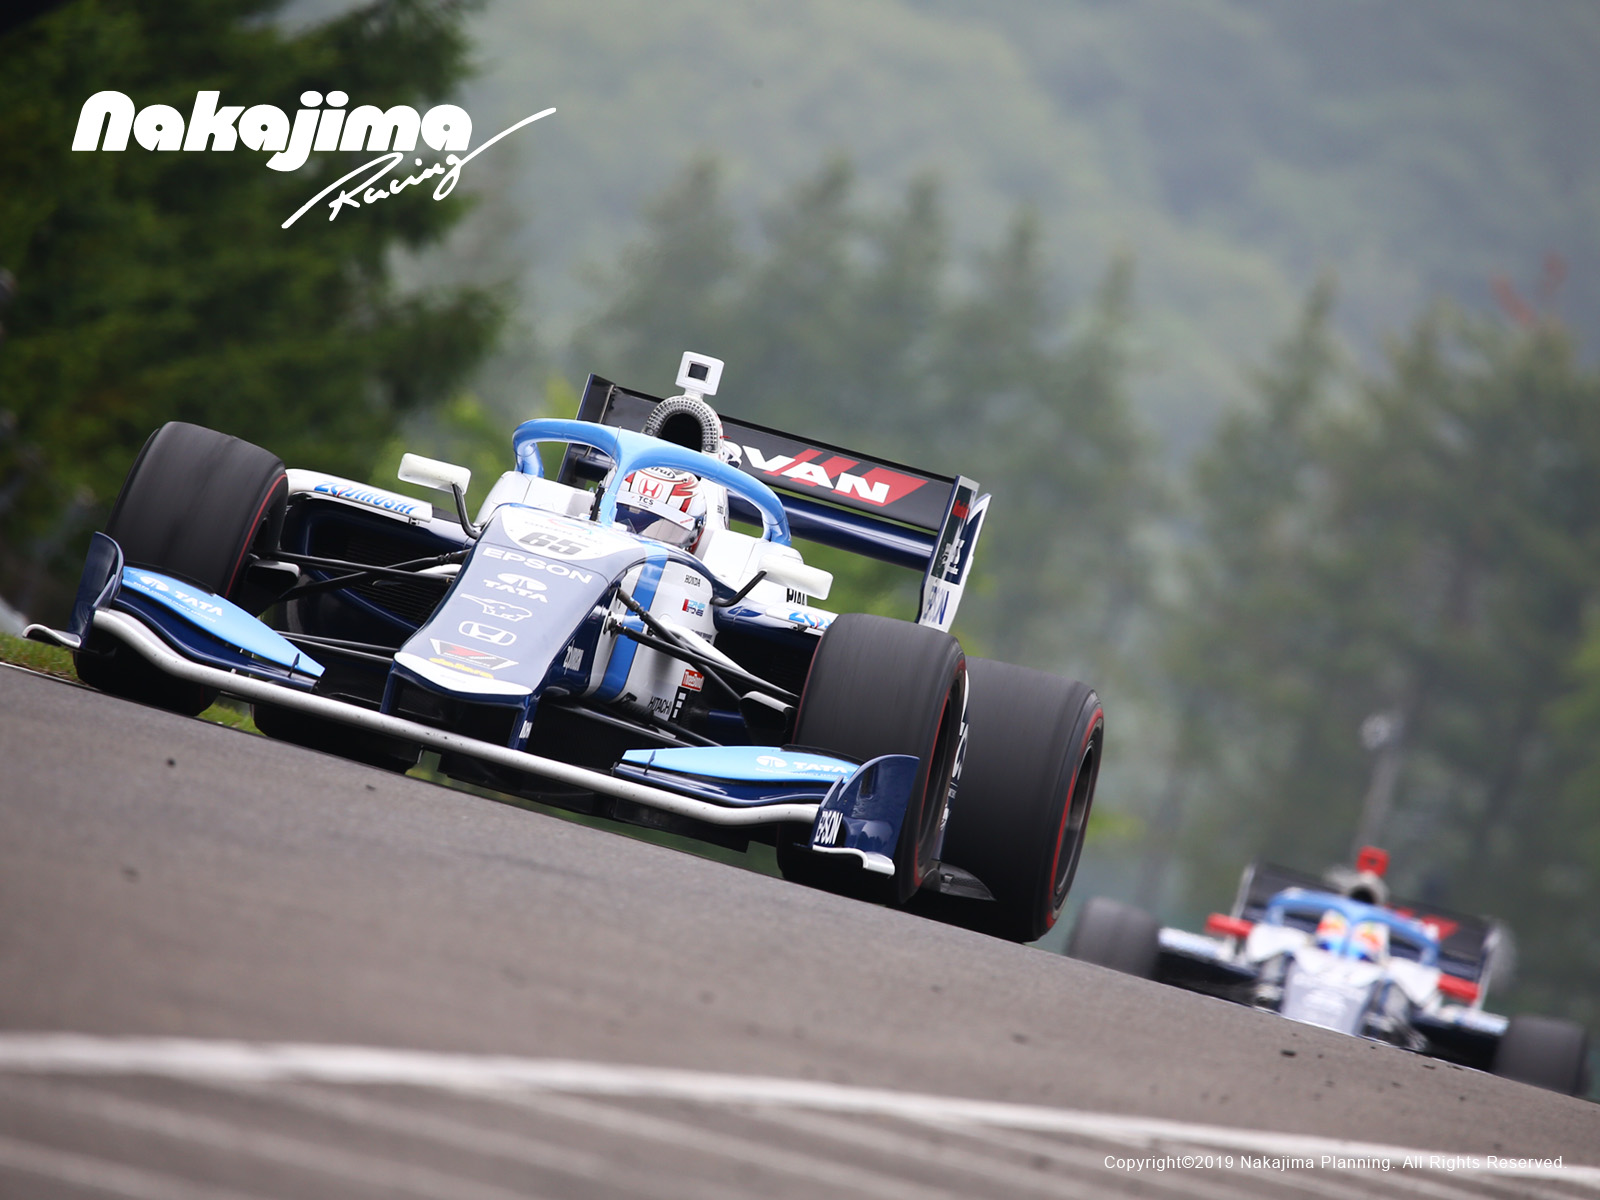 壁紙ダウンロード Nakajima Racing Official Website スーパーフォーミュラ スーパーgt Fcj F3 F1